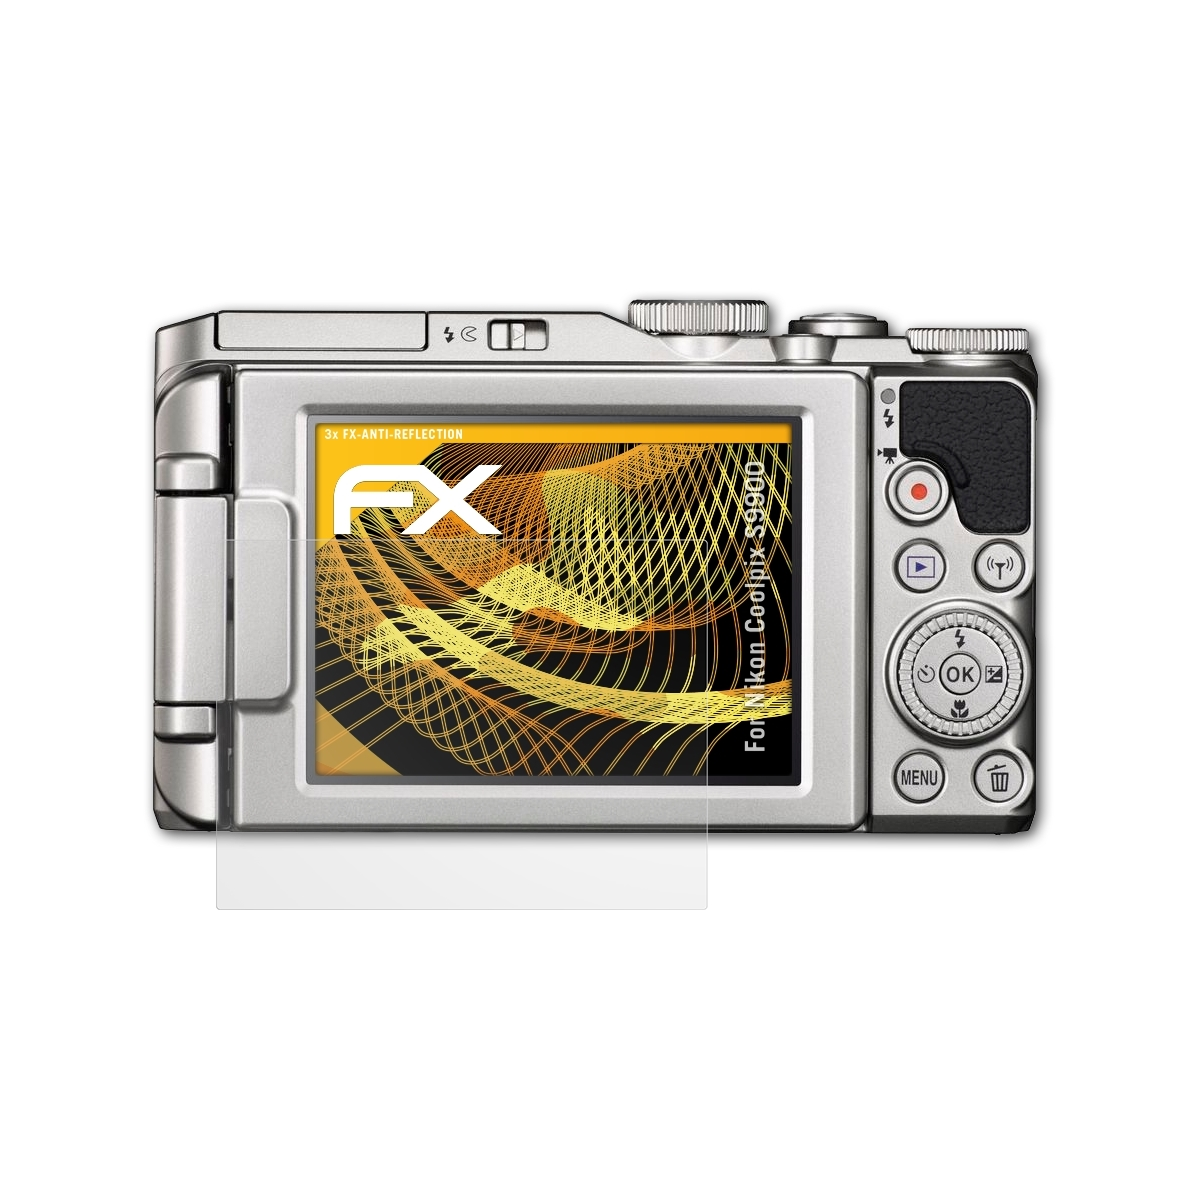 ATFOLIX 3x FX-Antireflex Displayschutz(für Coolpix S9900) Nikon